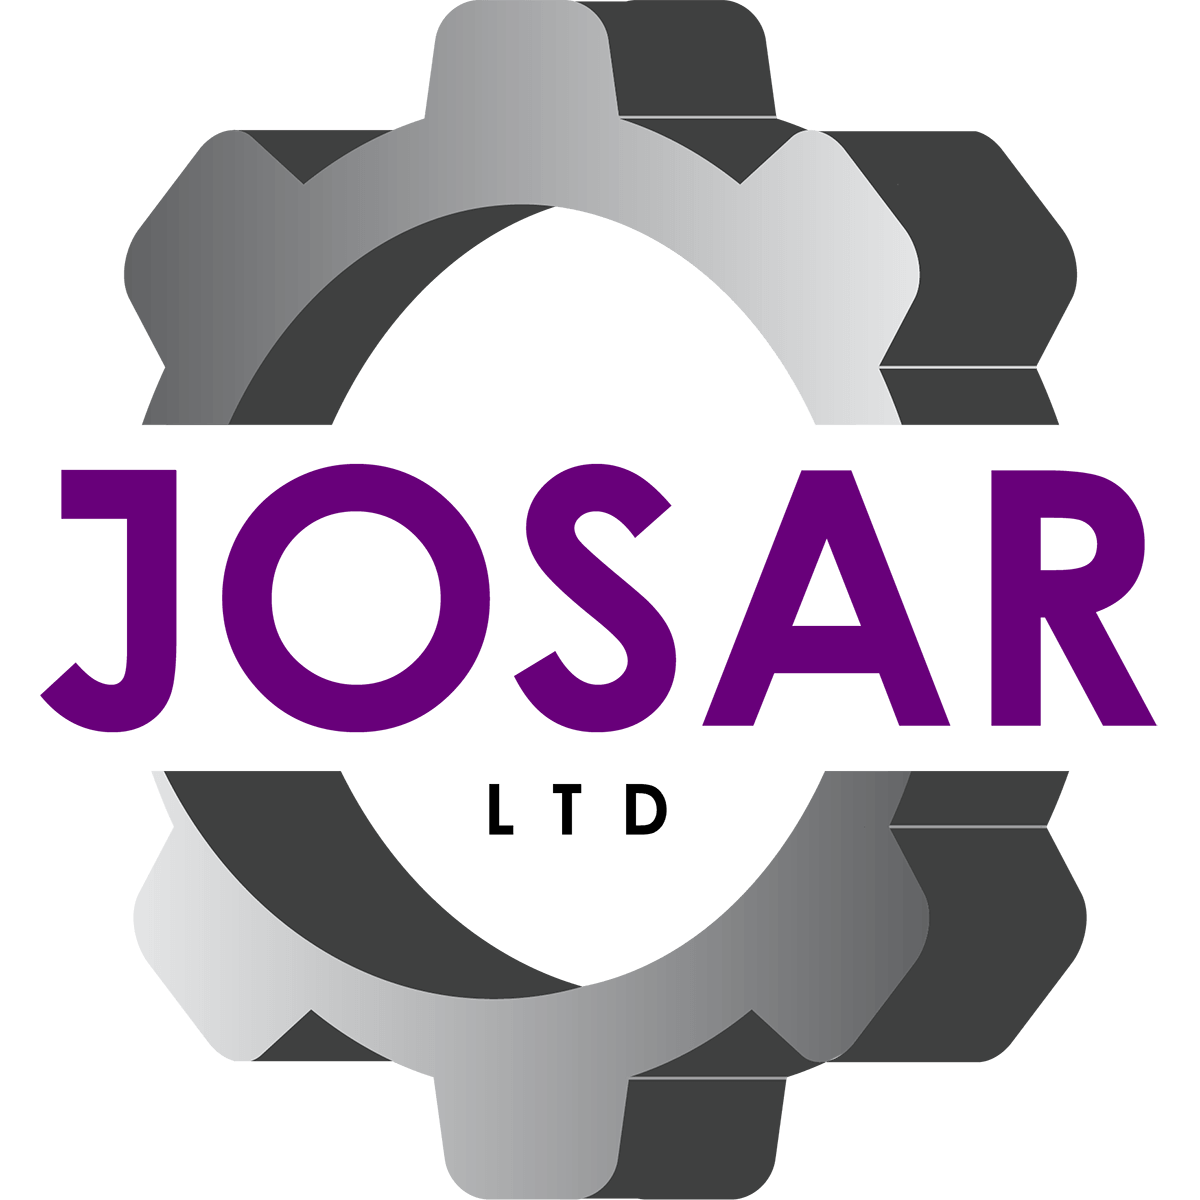 Josar Ltd